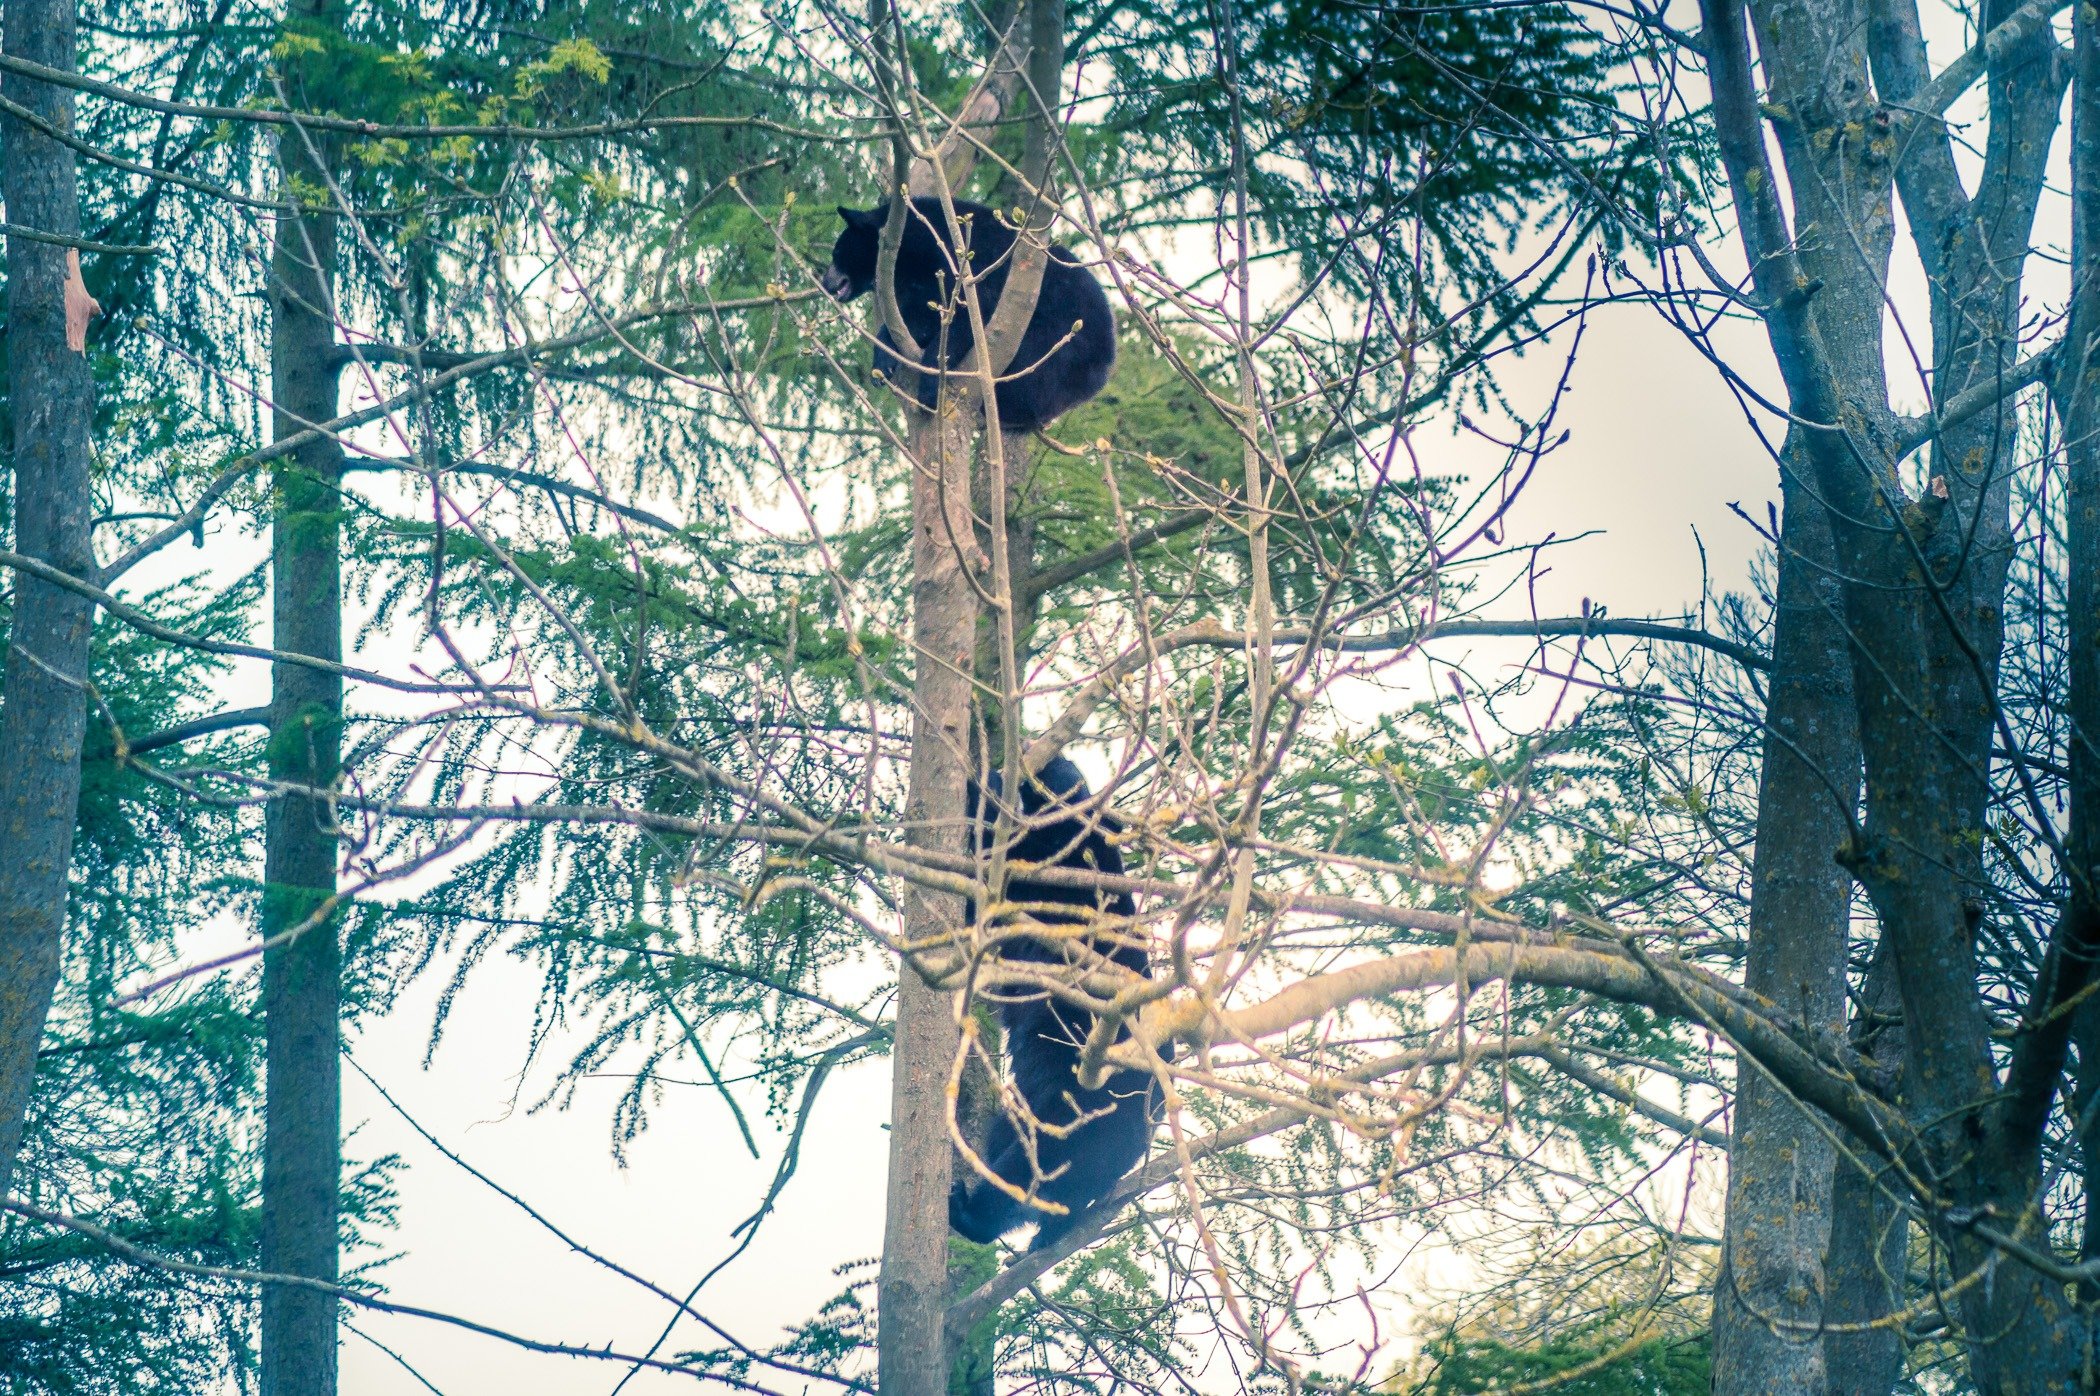 Bears up a tree